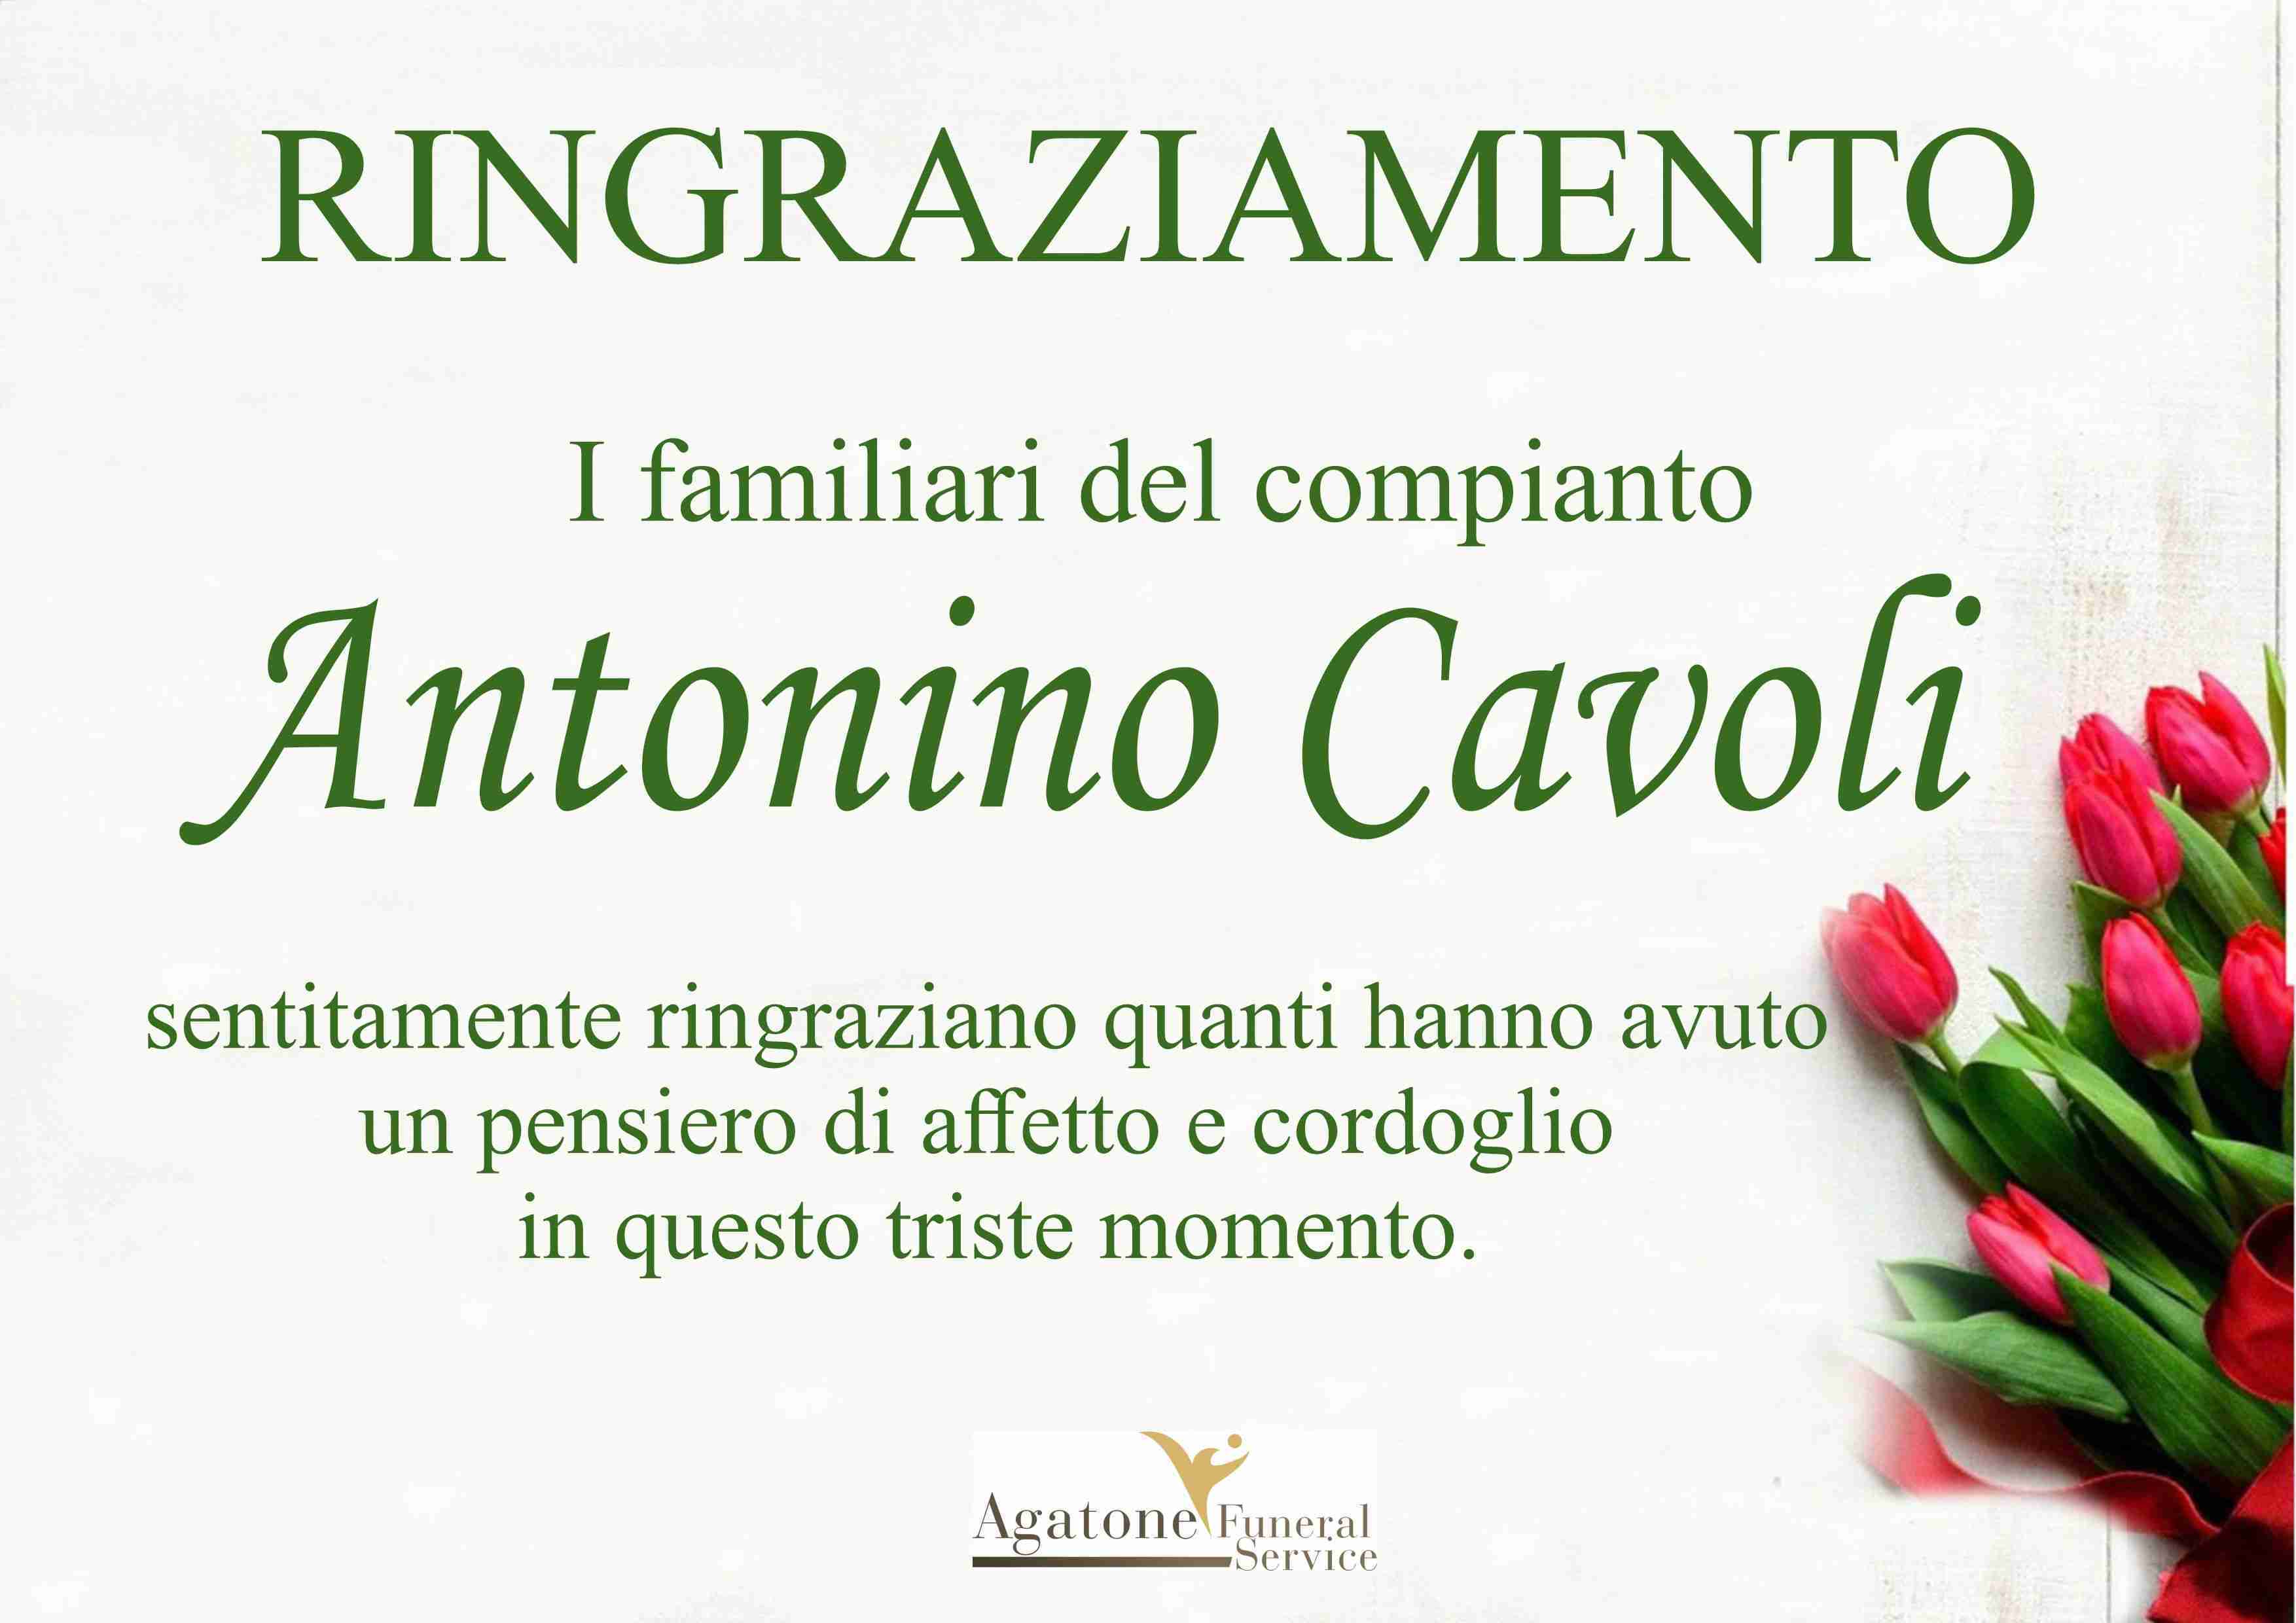 Antonino Cavoli